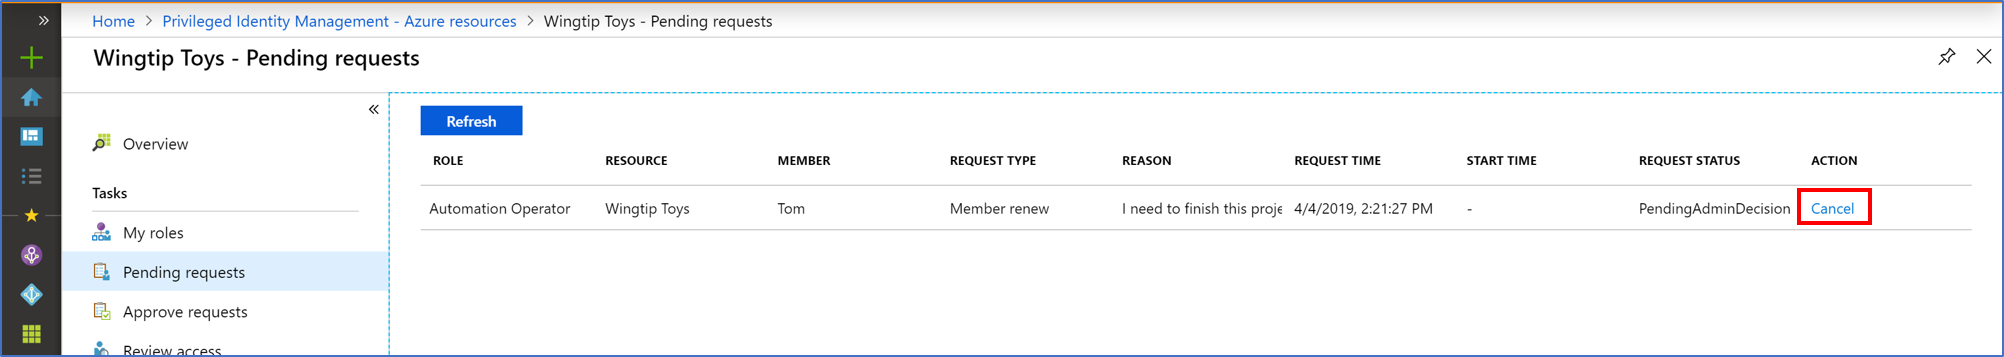 Captura de ecrã dos recursos do Azure - Página de pedidos pendentes que lista todos os pedidos pendentes e uma ligação para Cancelar.